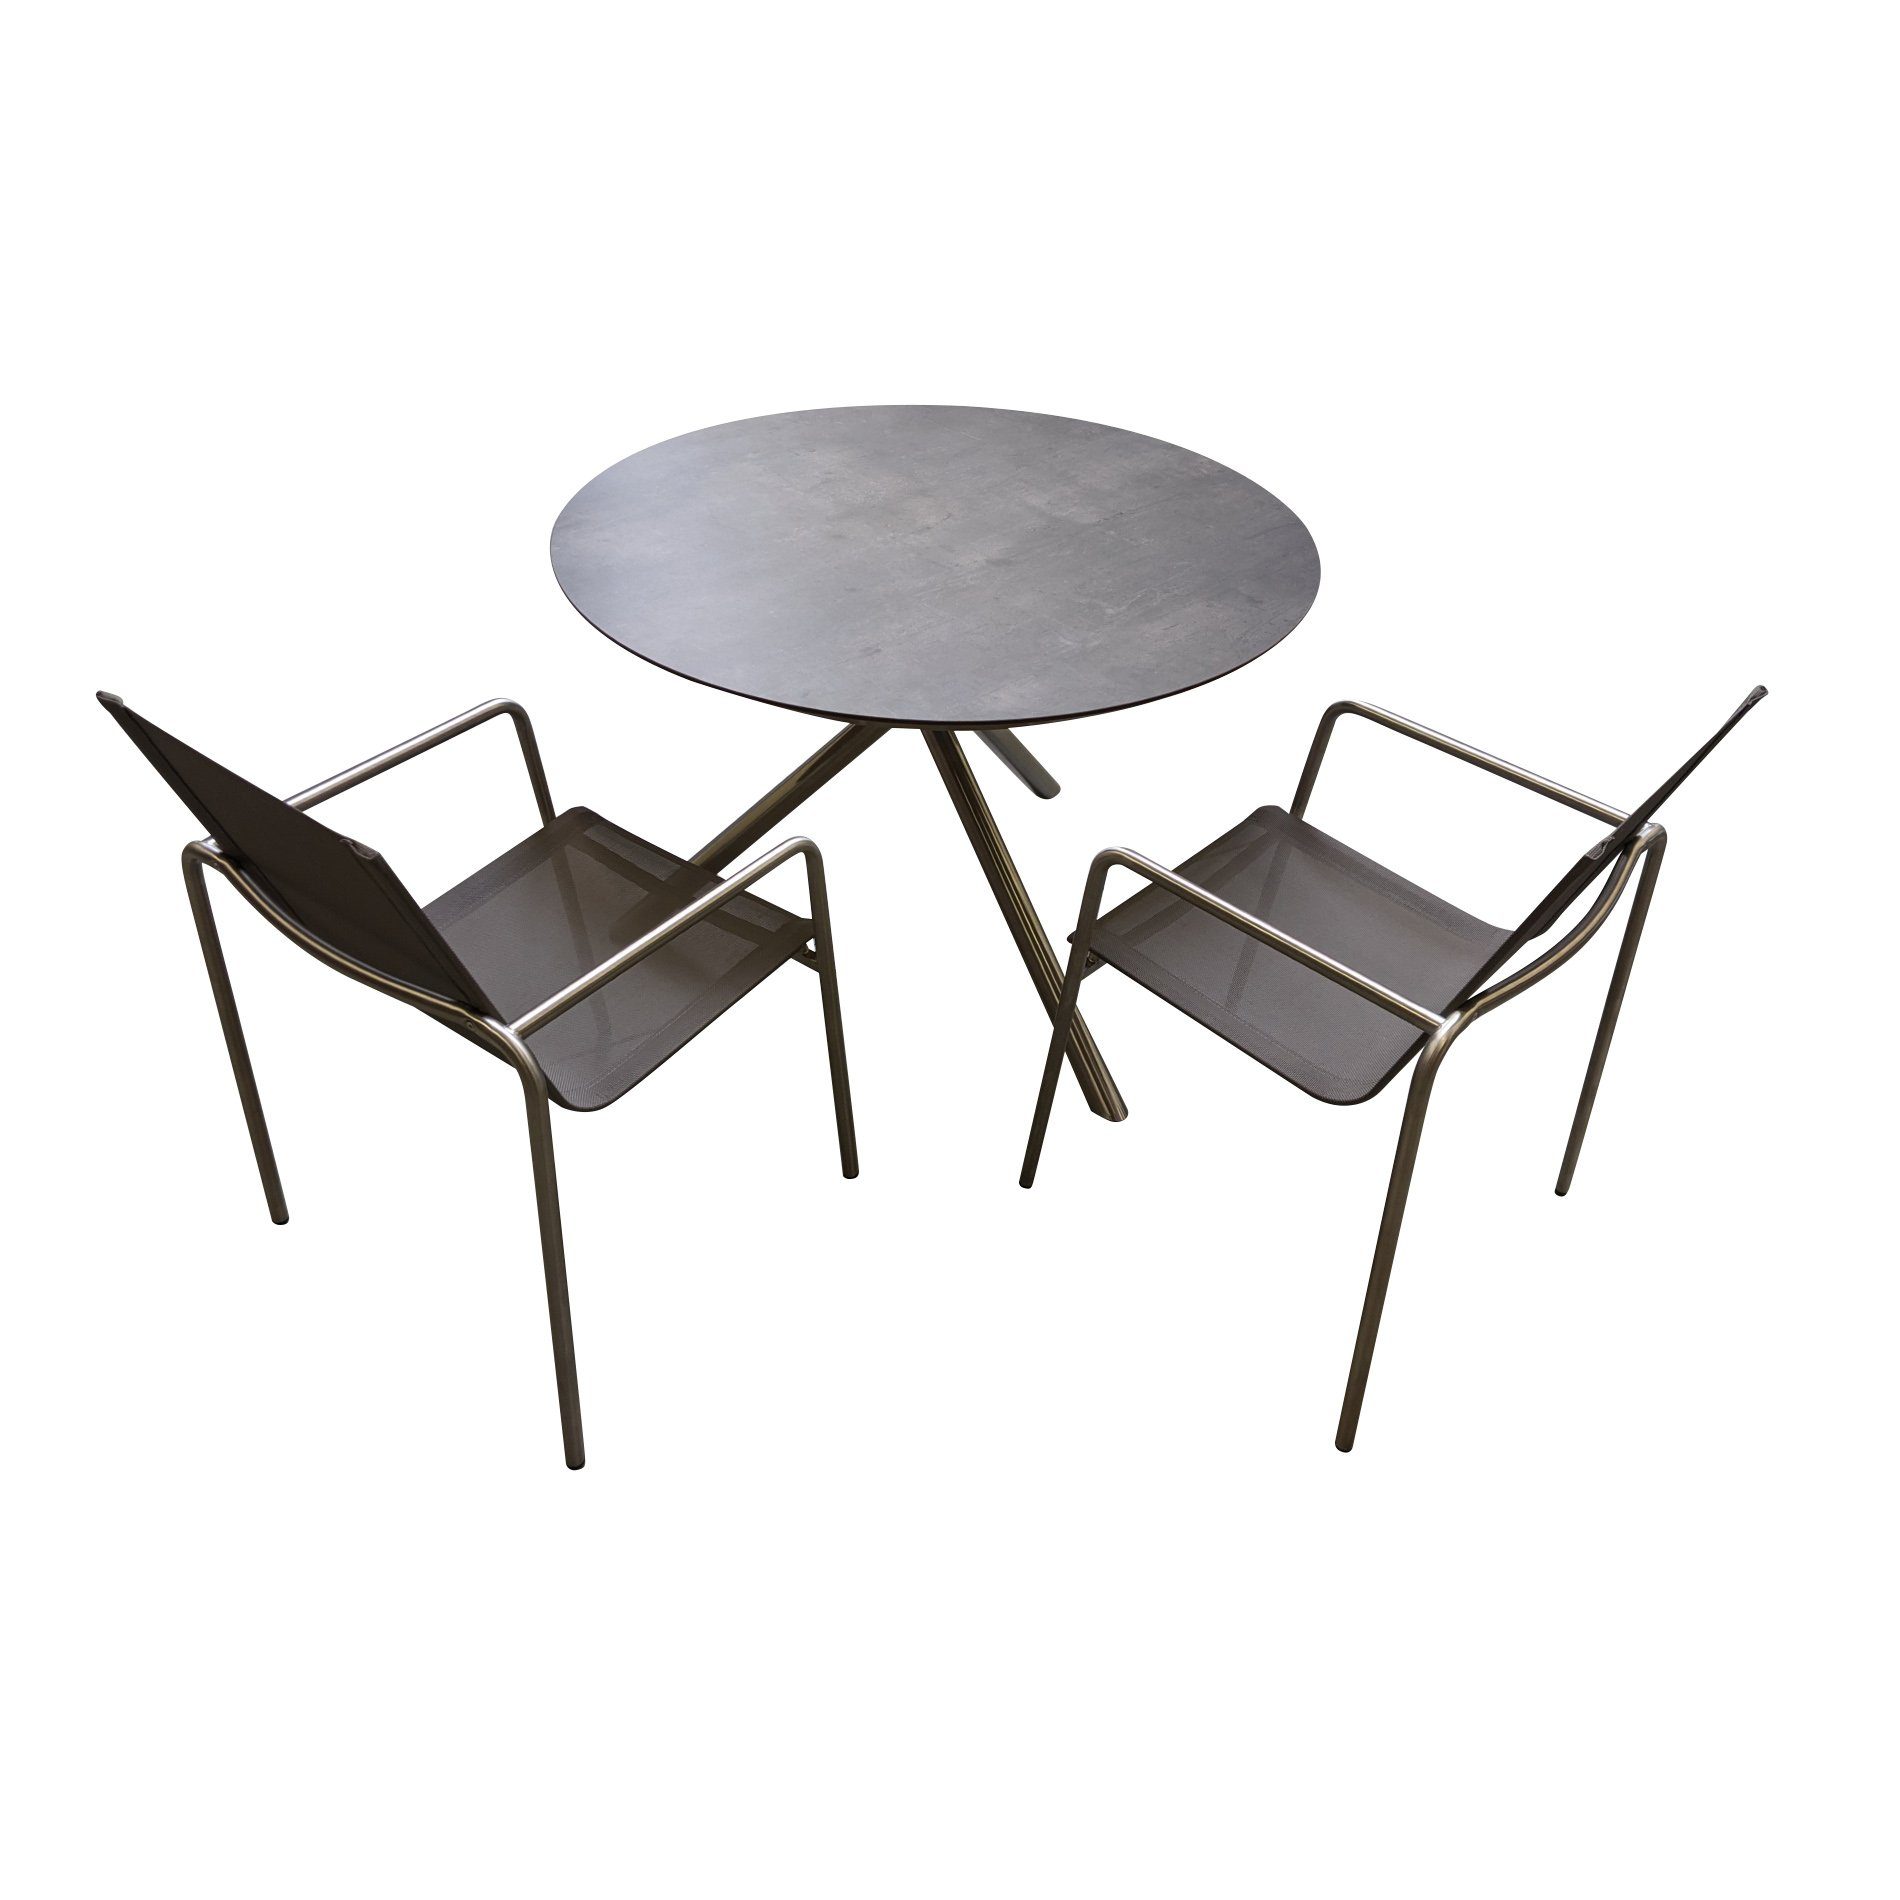 Ploß "Carlos" Tisch mit "Amado" Stapelsessel, Gestelle Edelstahl gebrushed, Sitzfläche Textilgewebe taupe, Tischplatte HPL anthrazit marmoriert